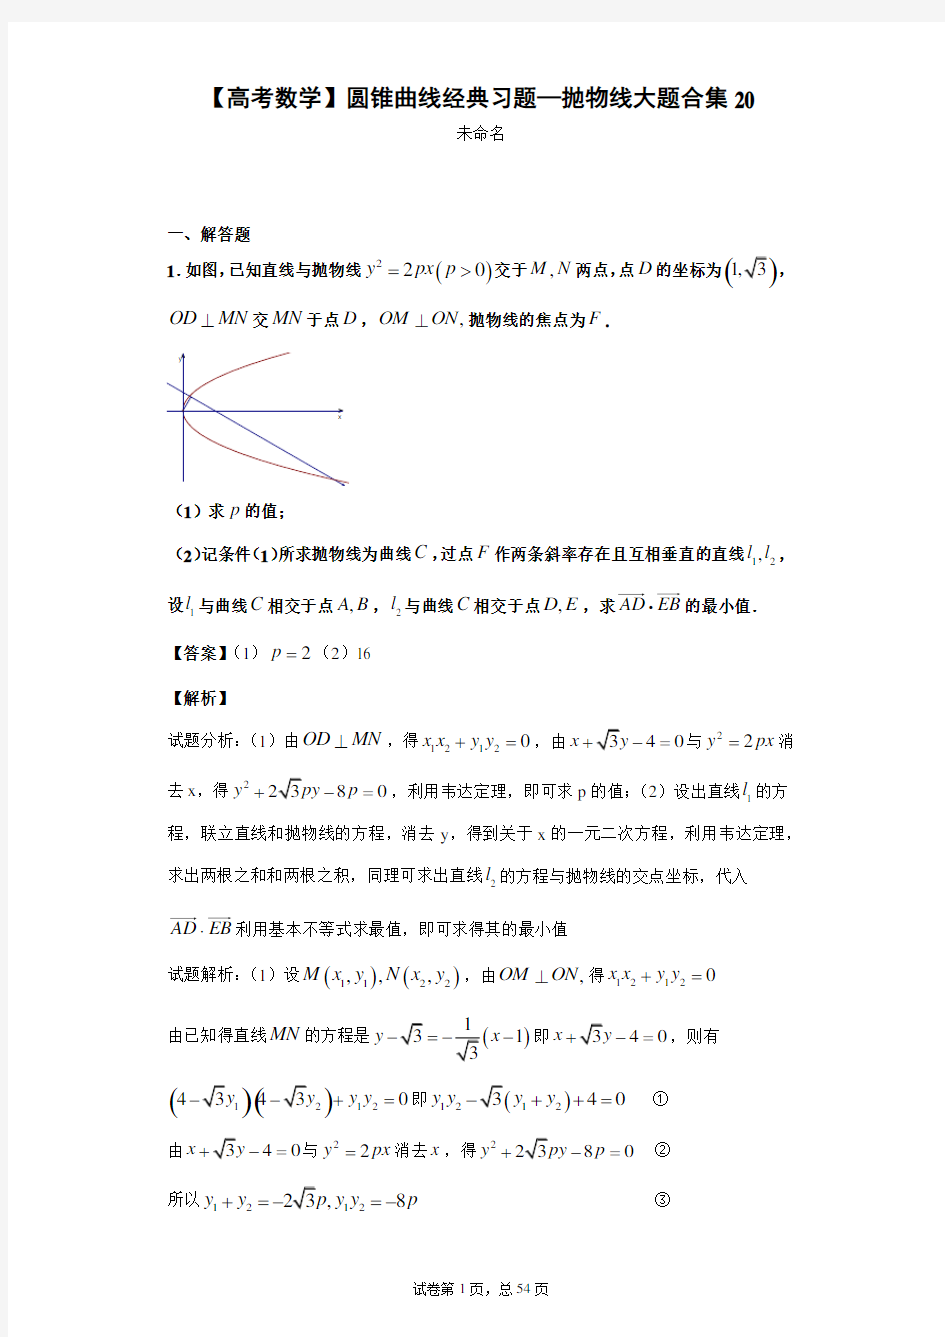 【高考数学】圆锥曲线经典习题—抛物线大题合集20